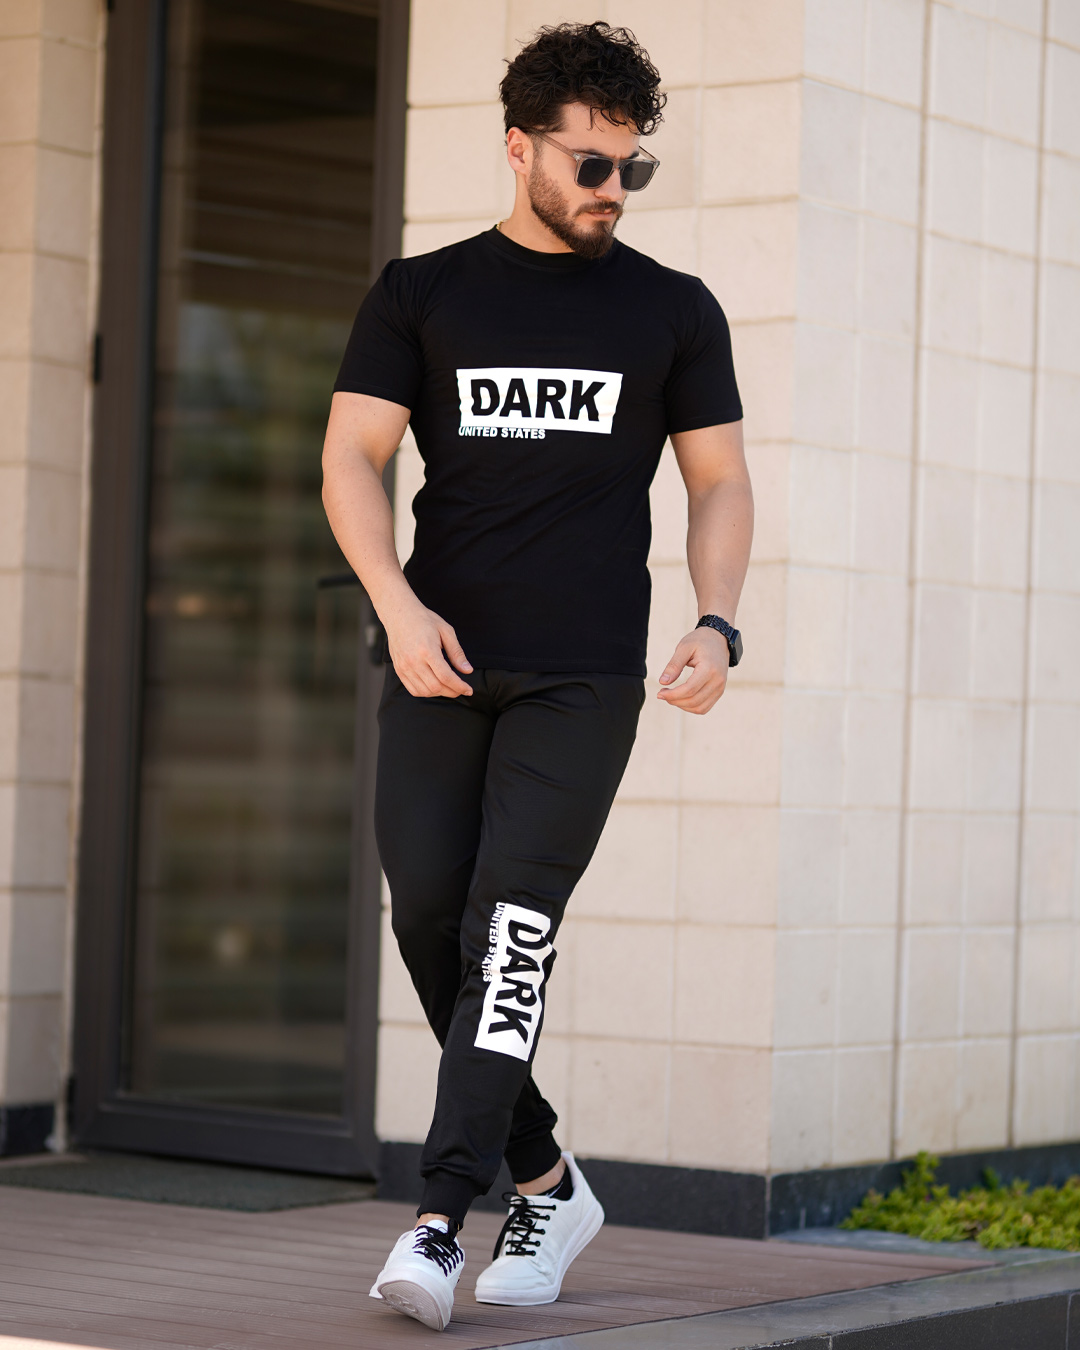 ست تیشرت شلوار مردانه مدل Dark کد 6005